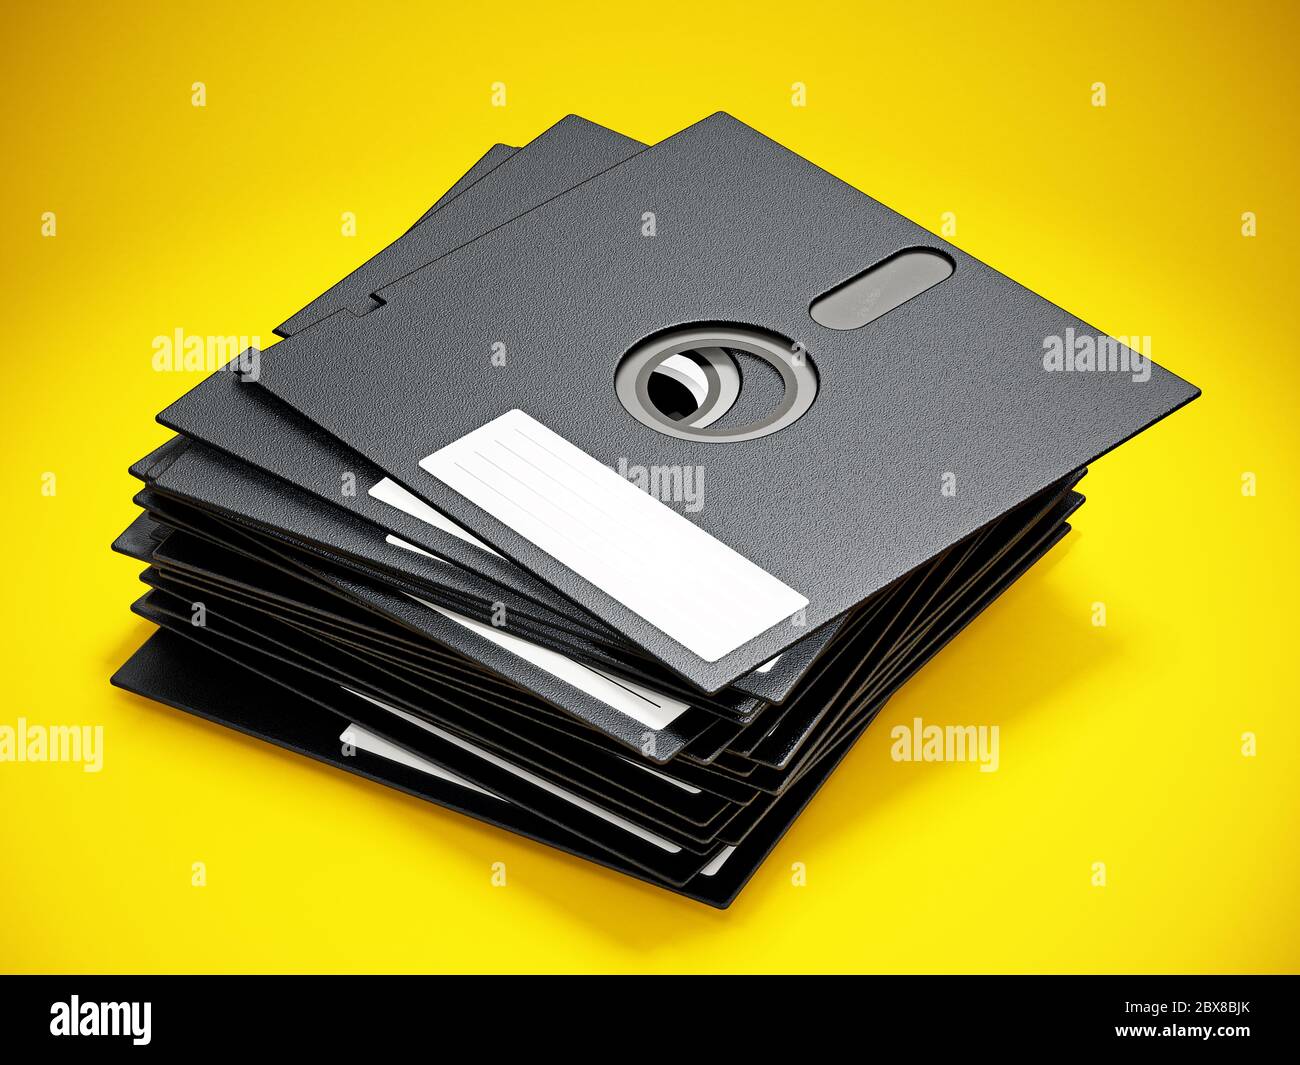 disquettes 5.25 pouces isolées sur fond jaune. Illustration 3D. Banque D'Images